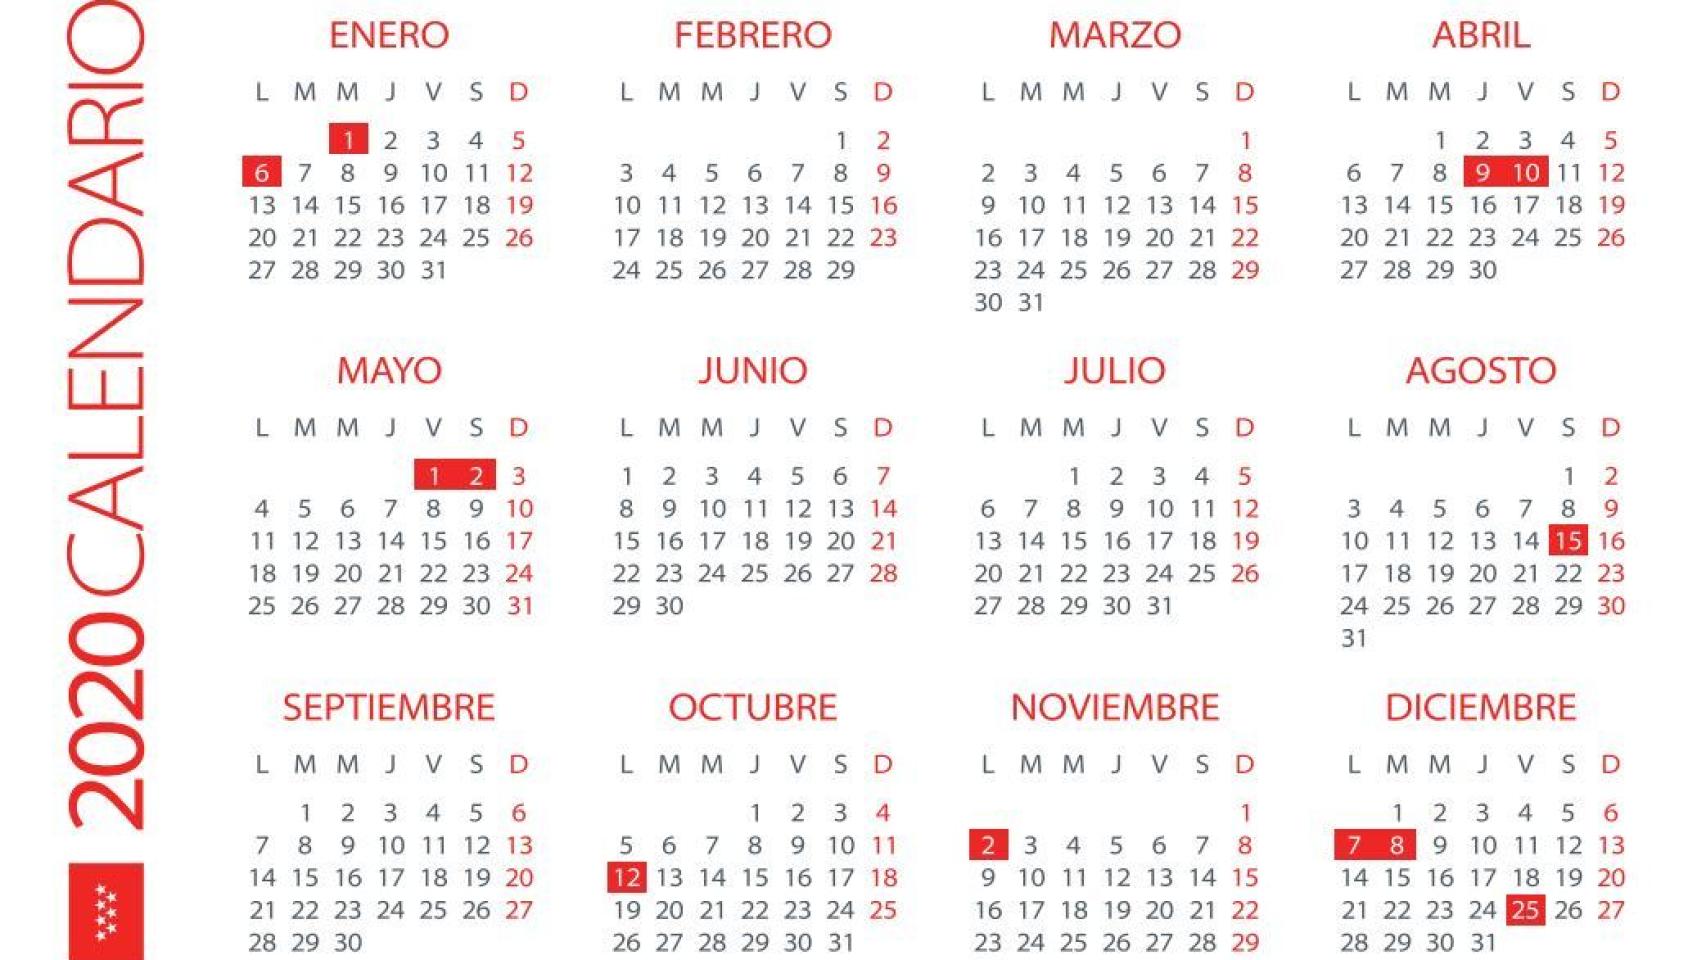 Calendario Laboral De Estos Son Los D As Festivos Y Los Puentes The